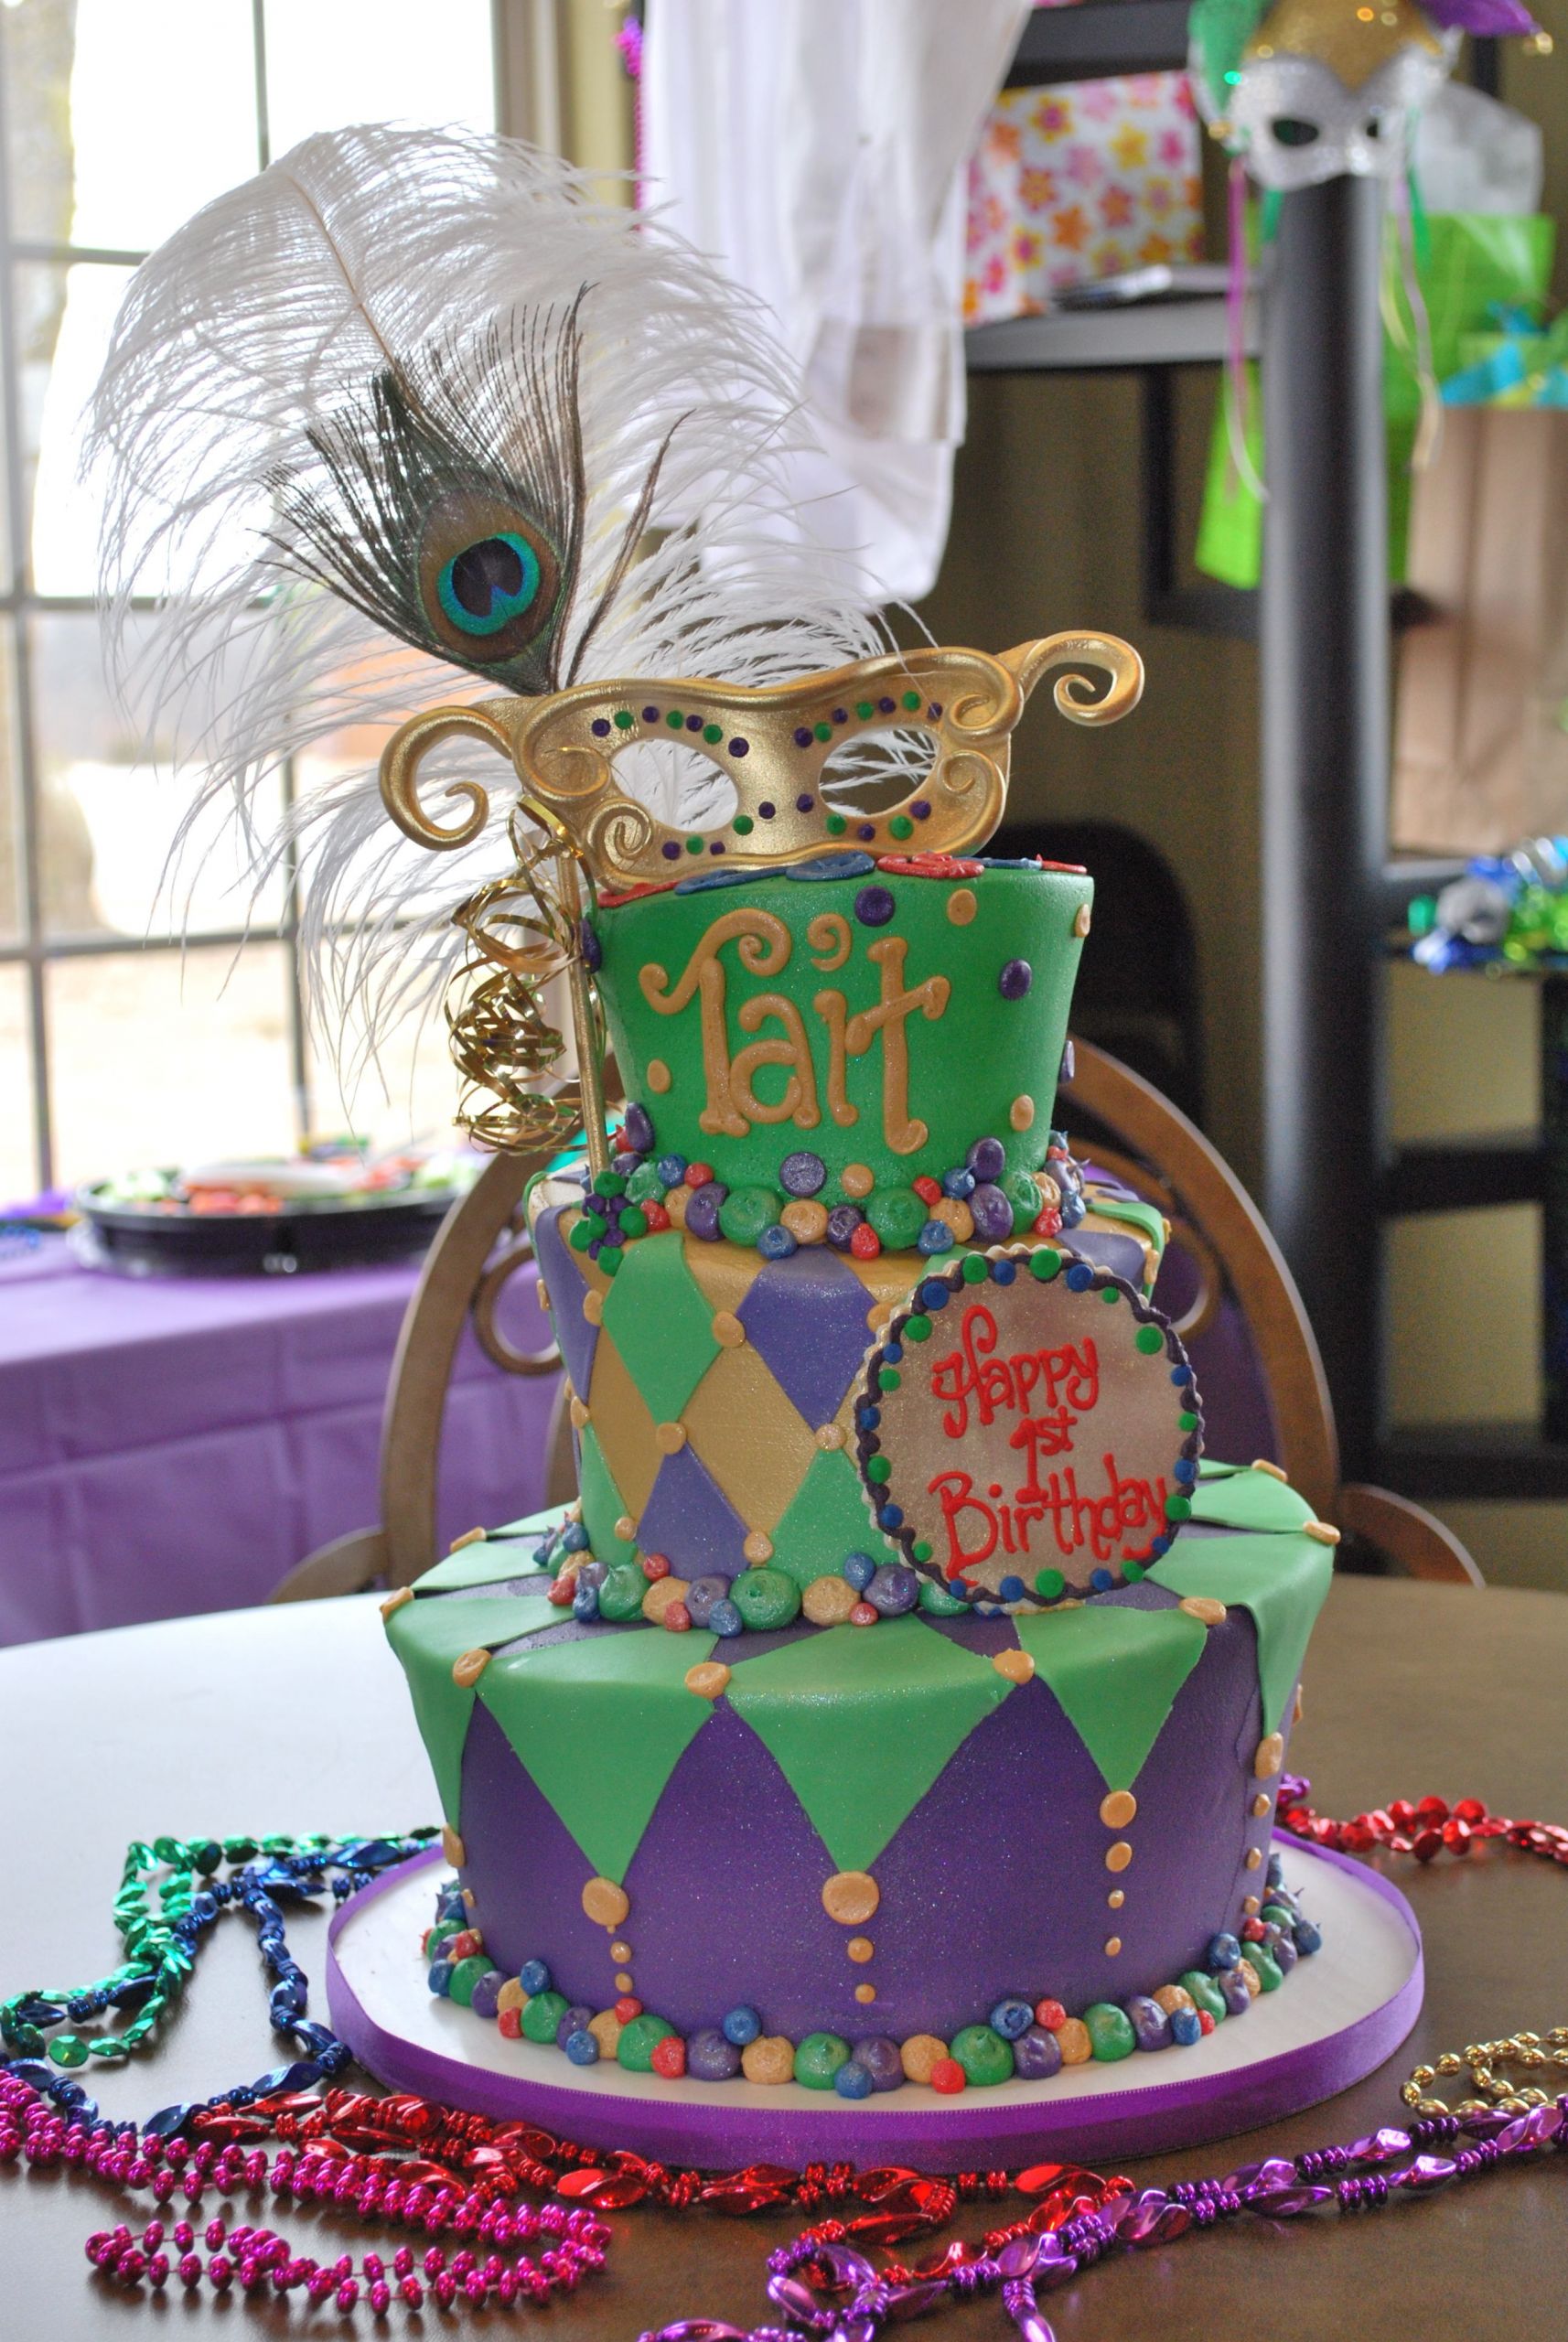 Mardi Gras Birthday Cake
 First Birthday Cake Mardi Gras Theme